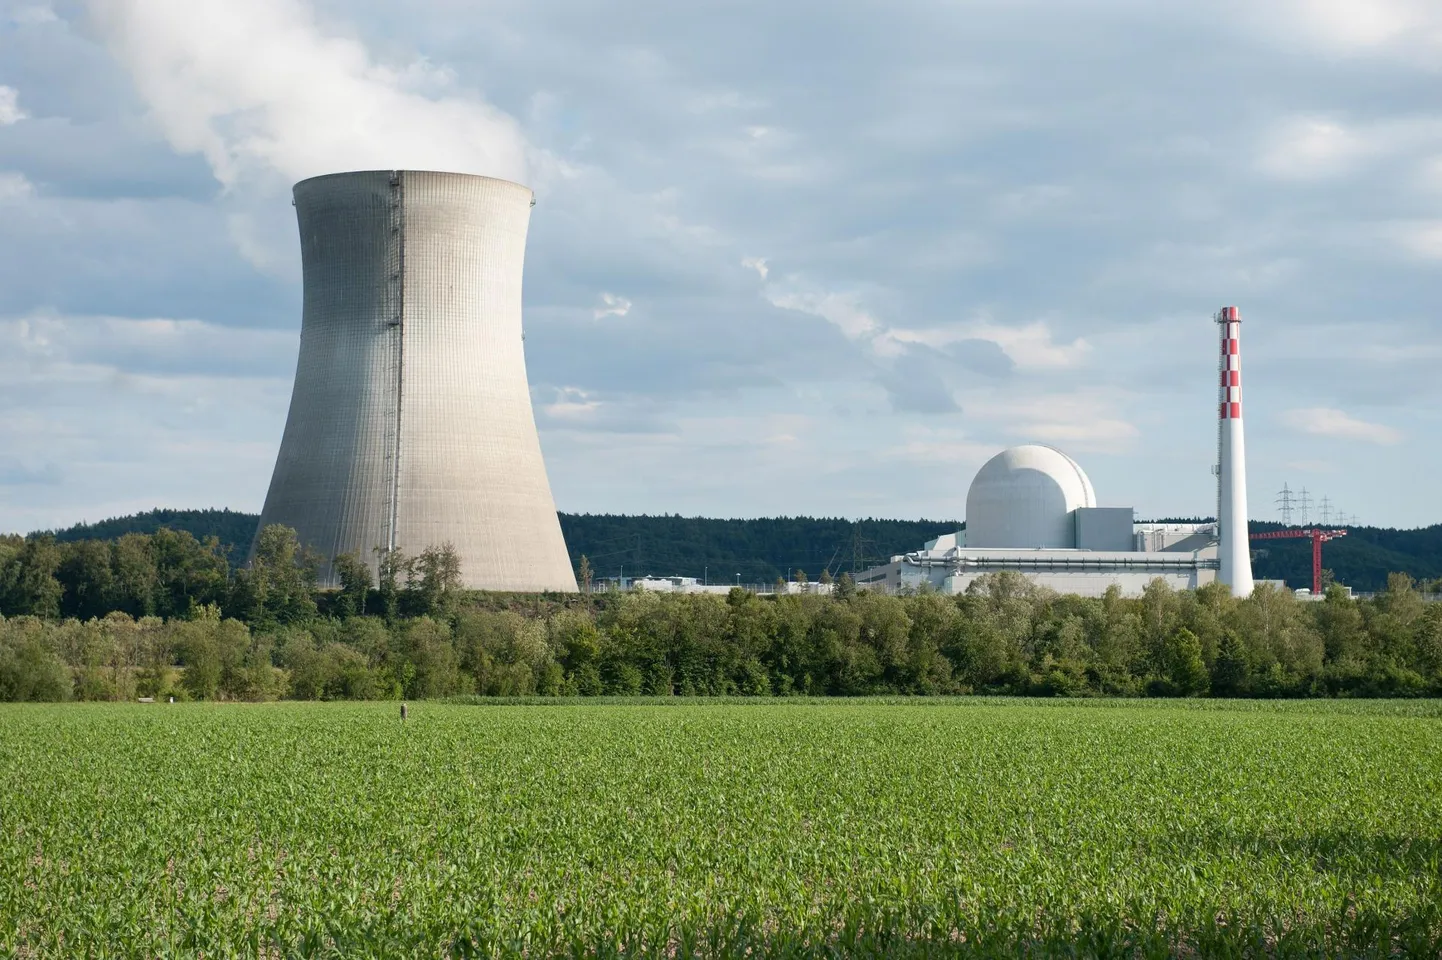 Üks võimalus kasvanud elektrienergia nõudlust rahuldada oleks muidugi tuumajaam, see aga paljudele ei meeldi.